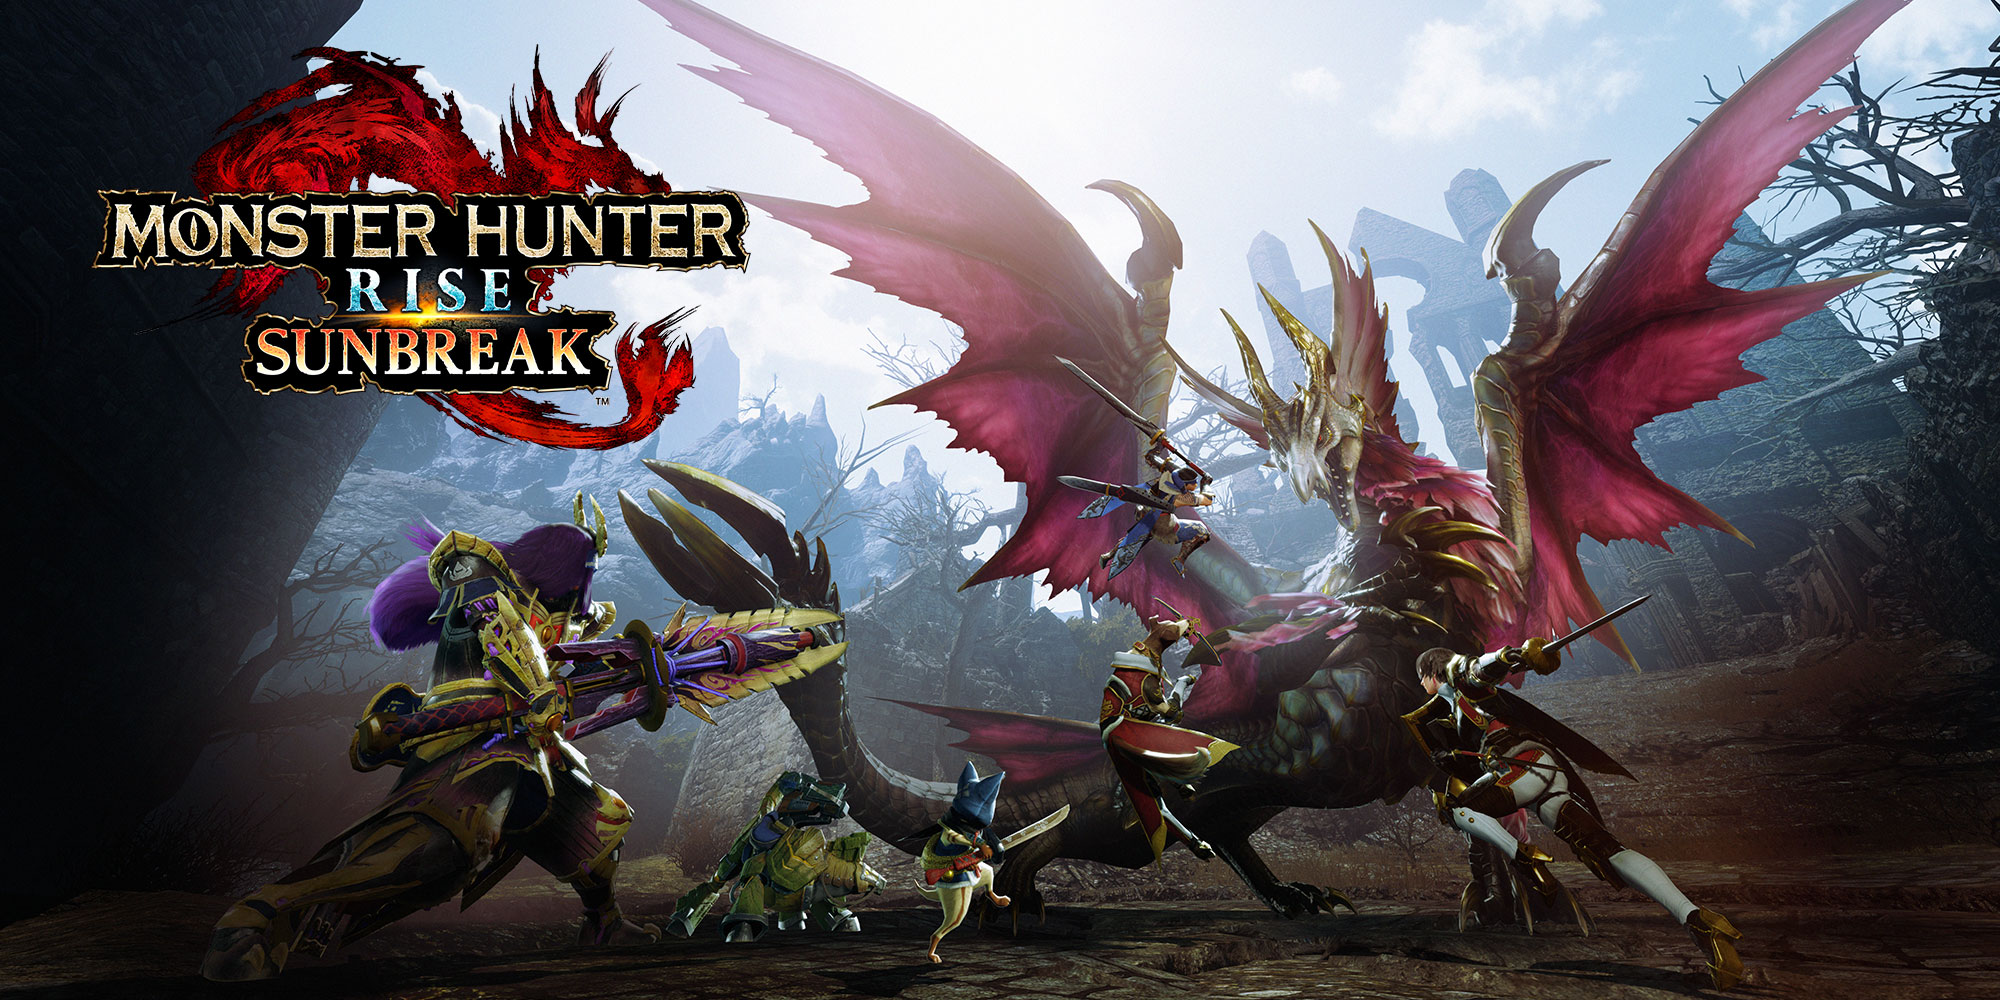 Capcom ستشاركنا بالمزيد من التفاصيل حول توسعة Monster Hunter Rise: Sunbreak الشهر المقبل